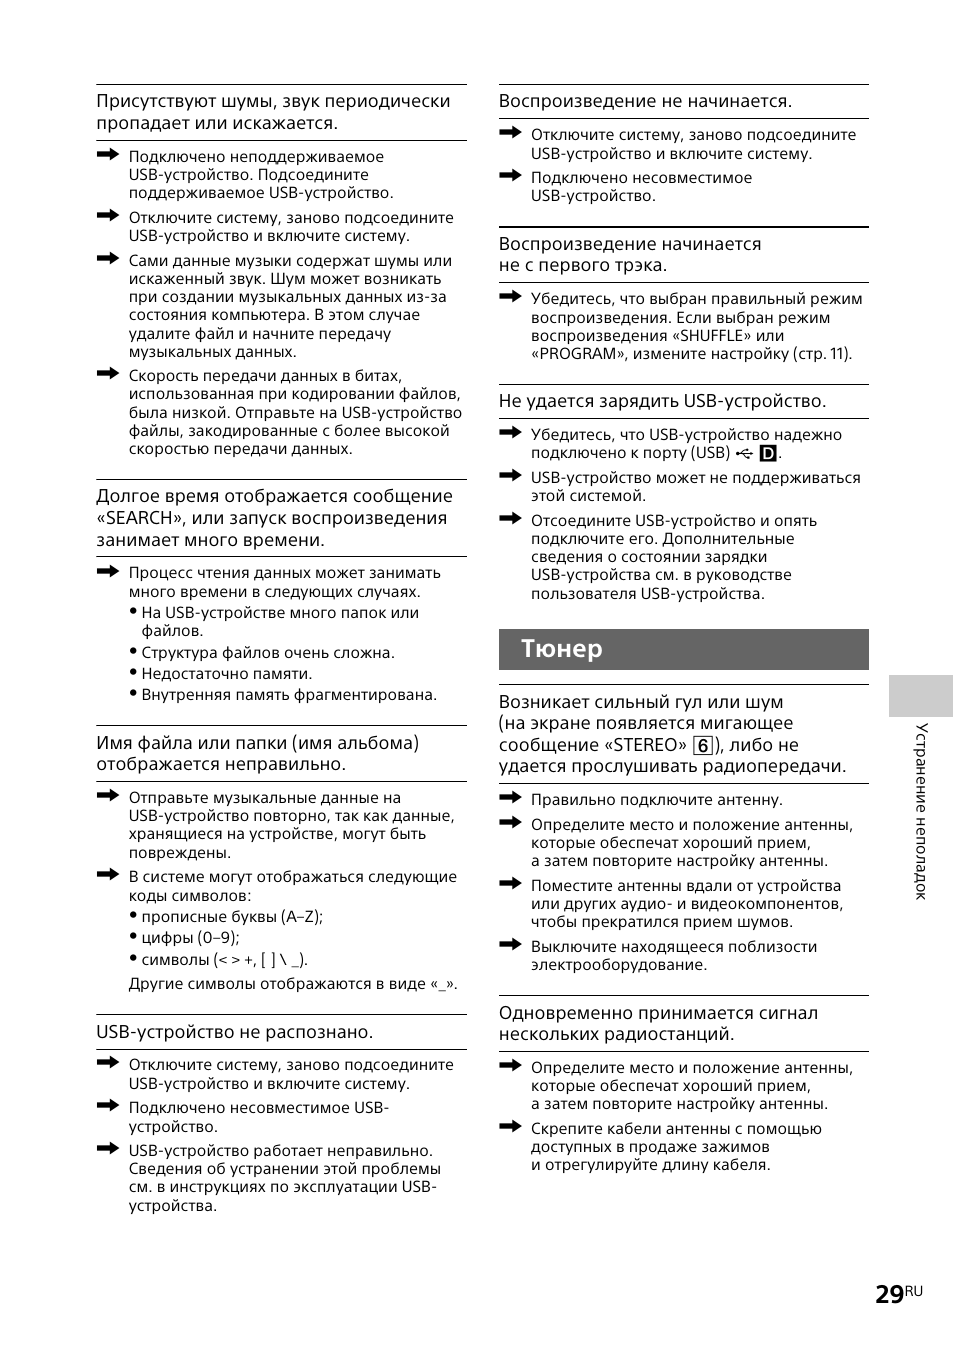 Тюнер | Инструкция по эксплуатации Sony CMT-X3CD | Страница 29 / 38